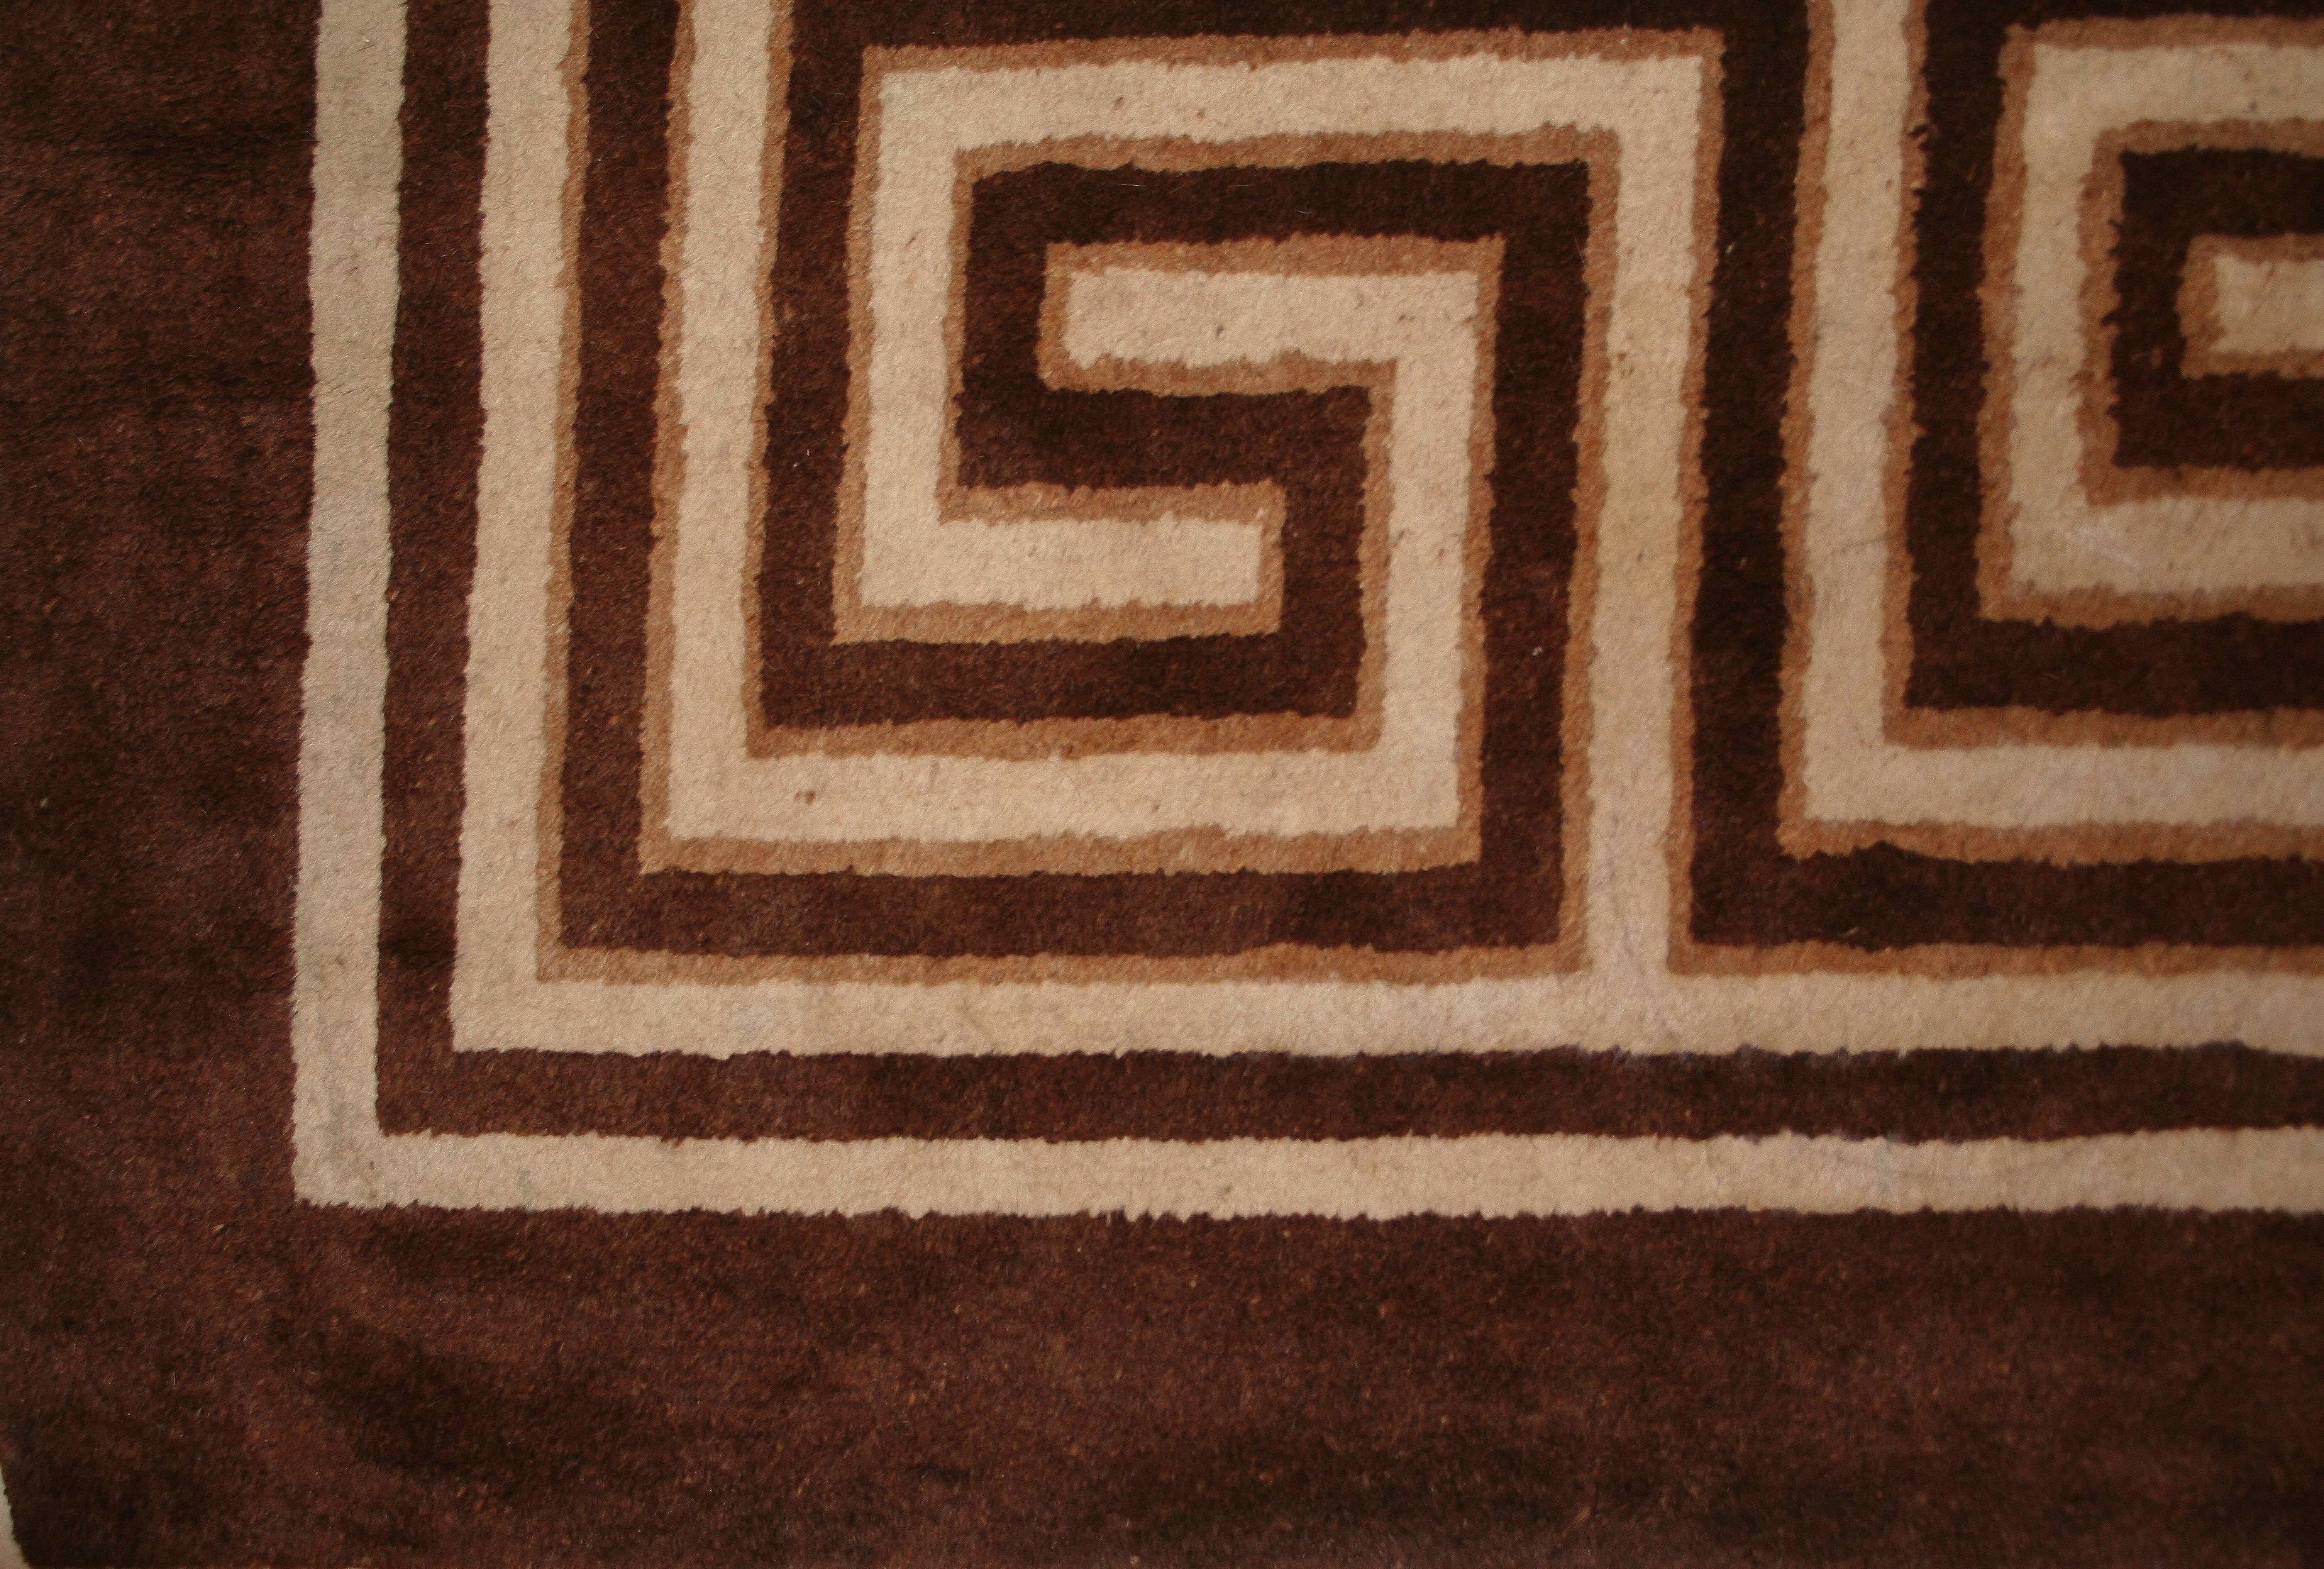 Das geometrische Gittermuster und die breite, fast dreidimensionale griechische Bordüre, die diesen seltenen mongolischen Teppich auszeichnen, sind eindeutig von den frühen Teppichen aus der Region Ningxia inspiriert. Die ausschließliche Verwendung